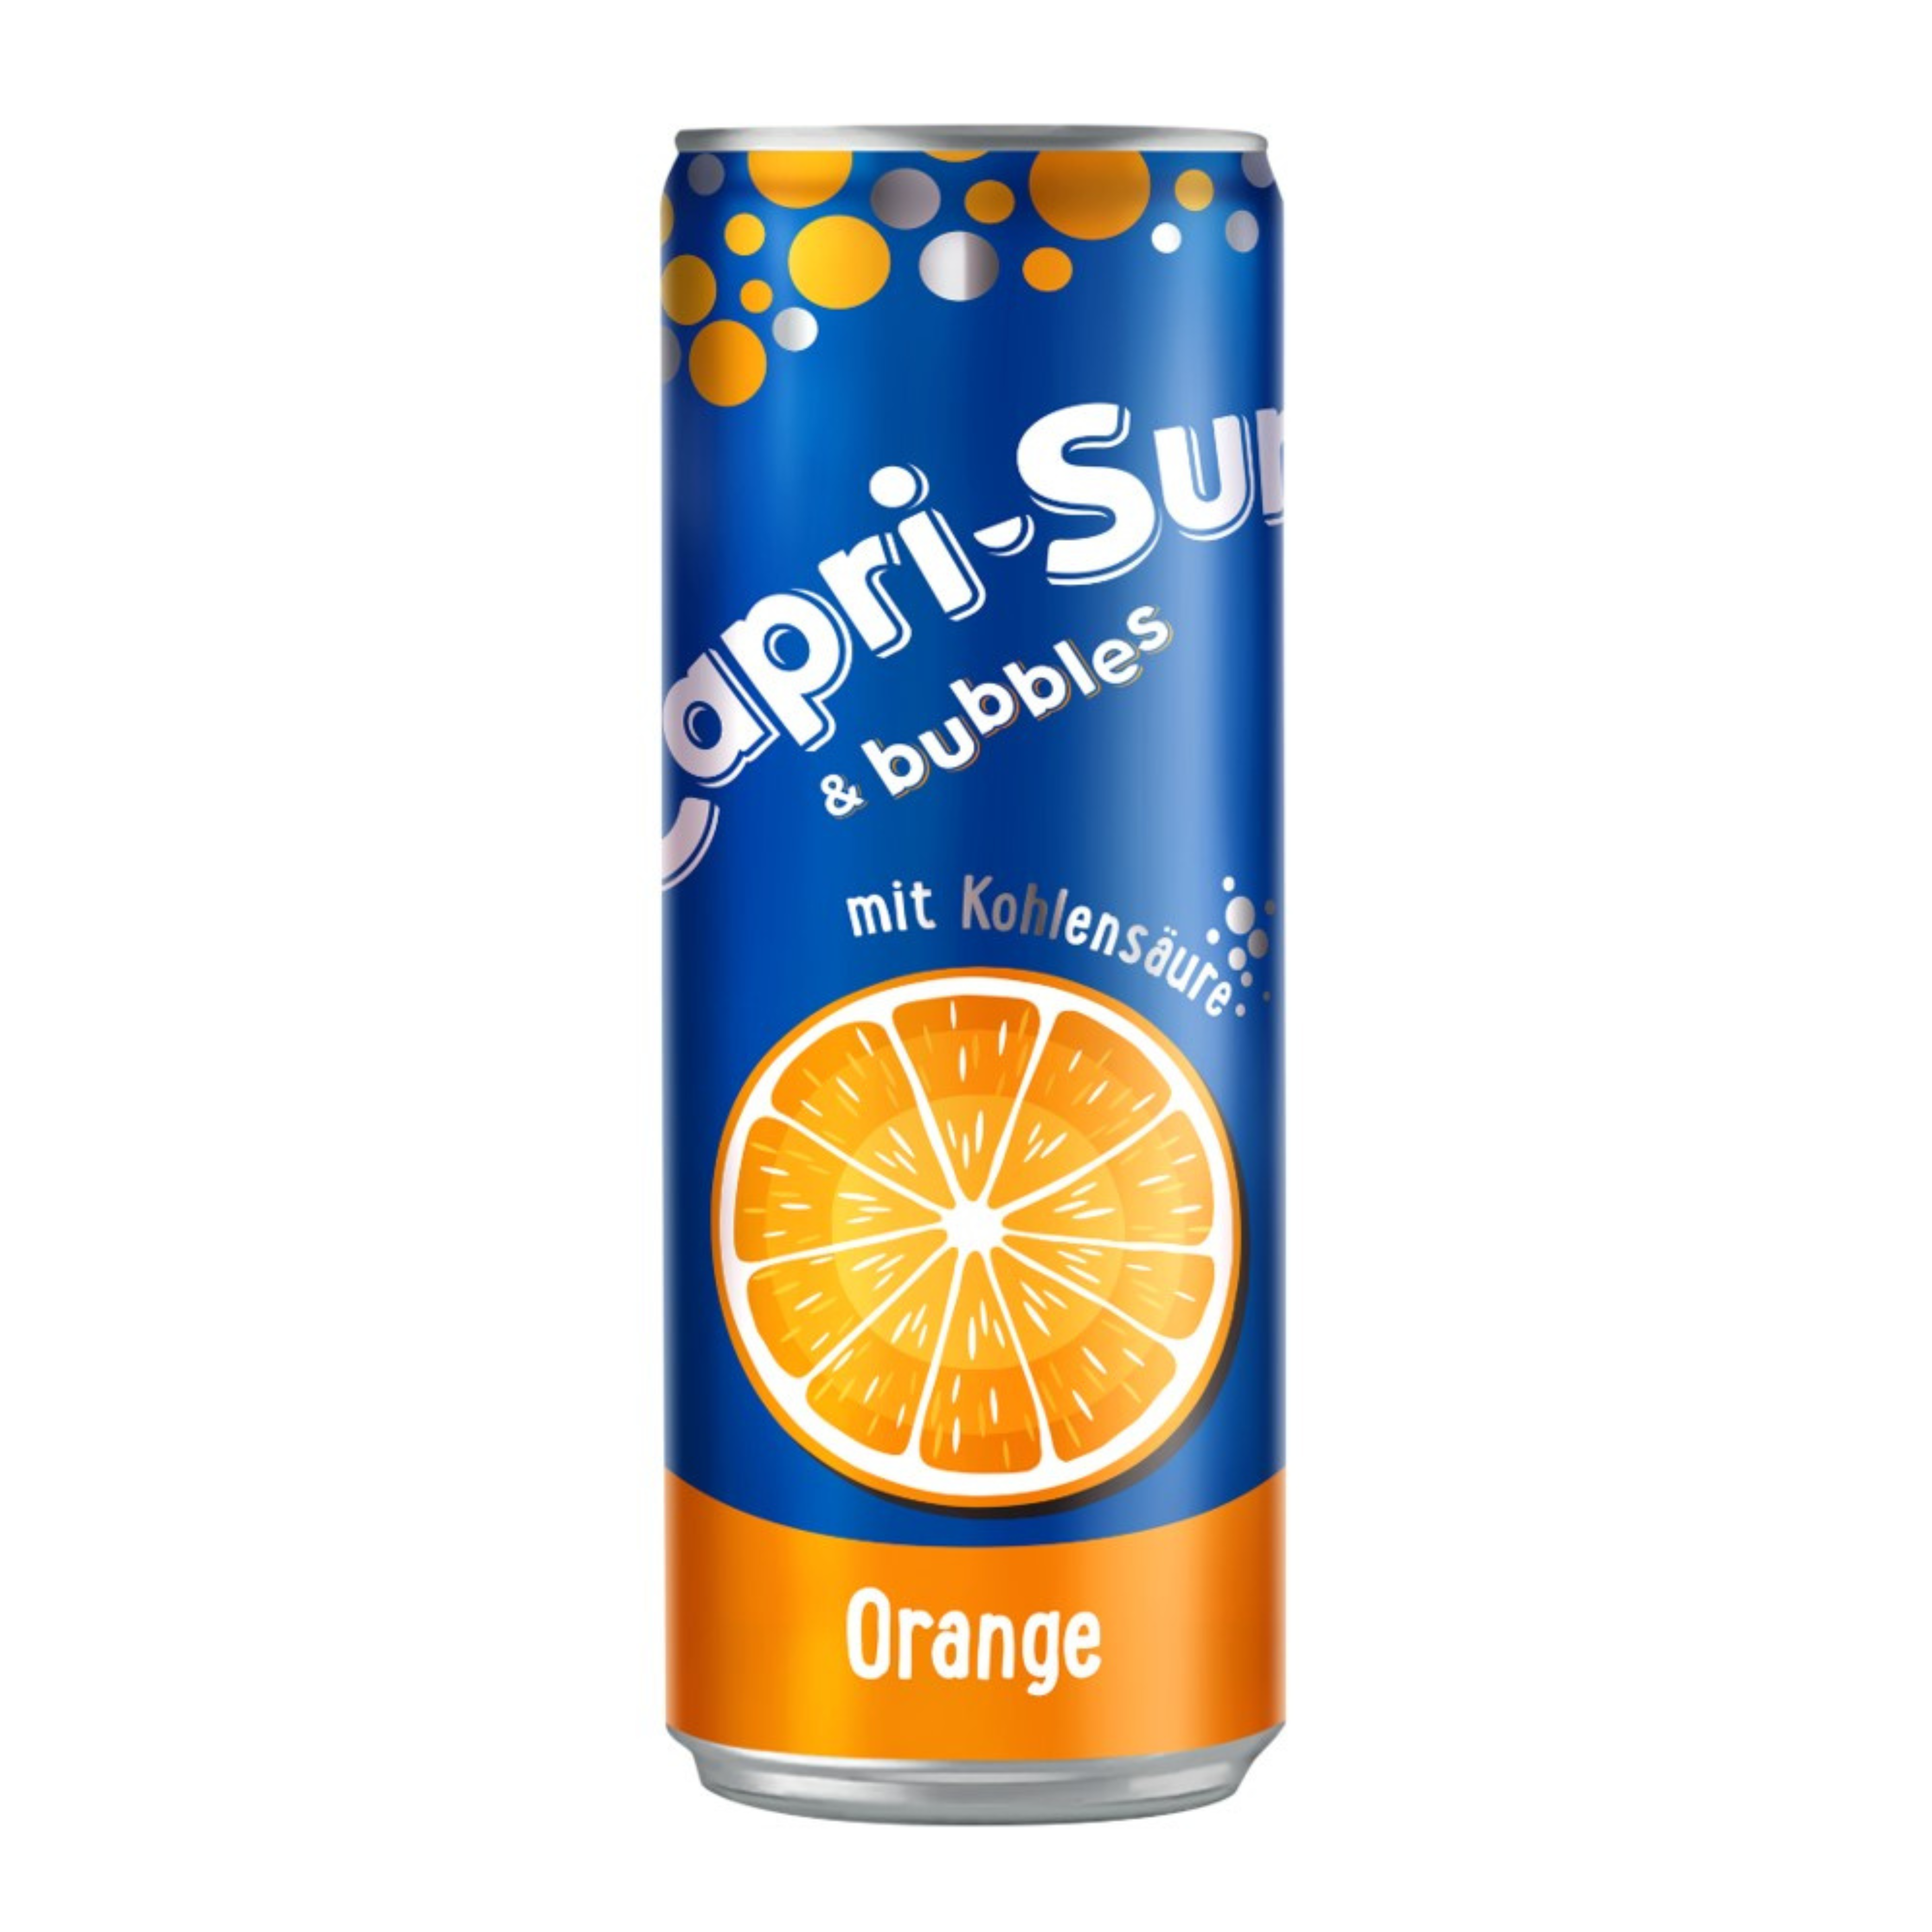  CAPRI-SUN&BUBBLES orange juice drink 330ml